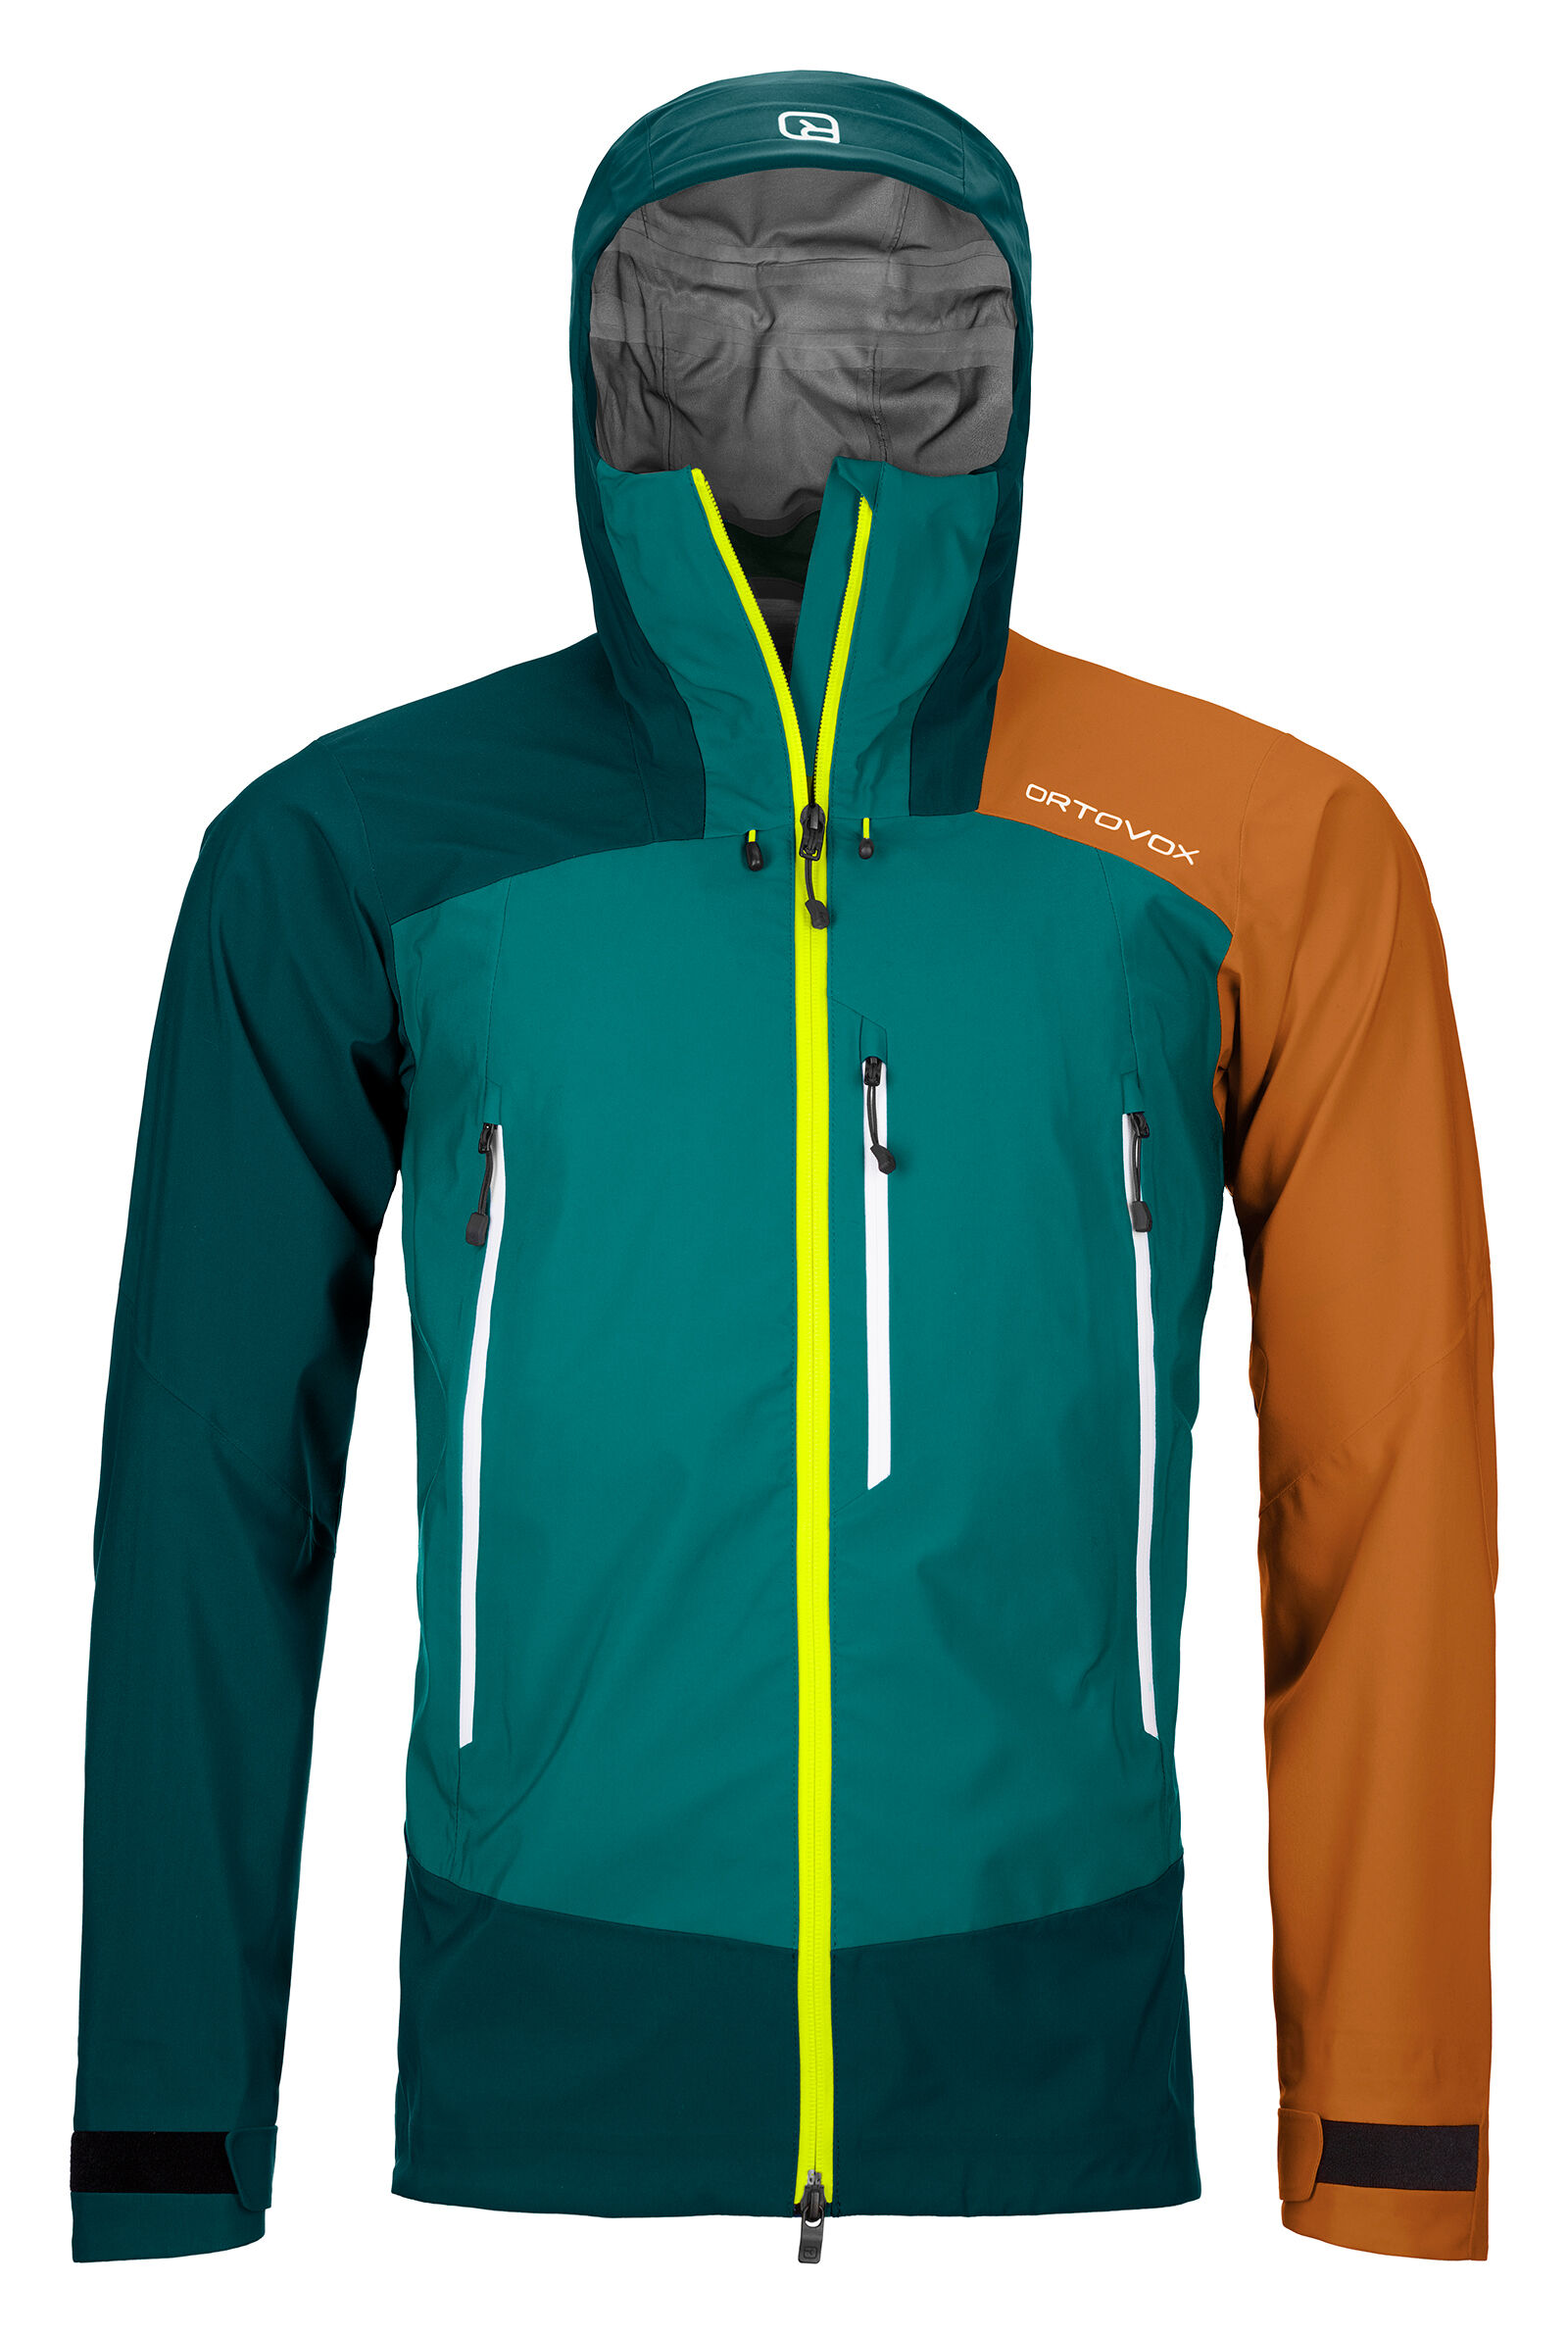 Ortovox Westalpen 3L Jacket - Waterproof jacket - Men's